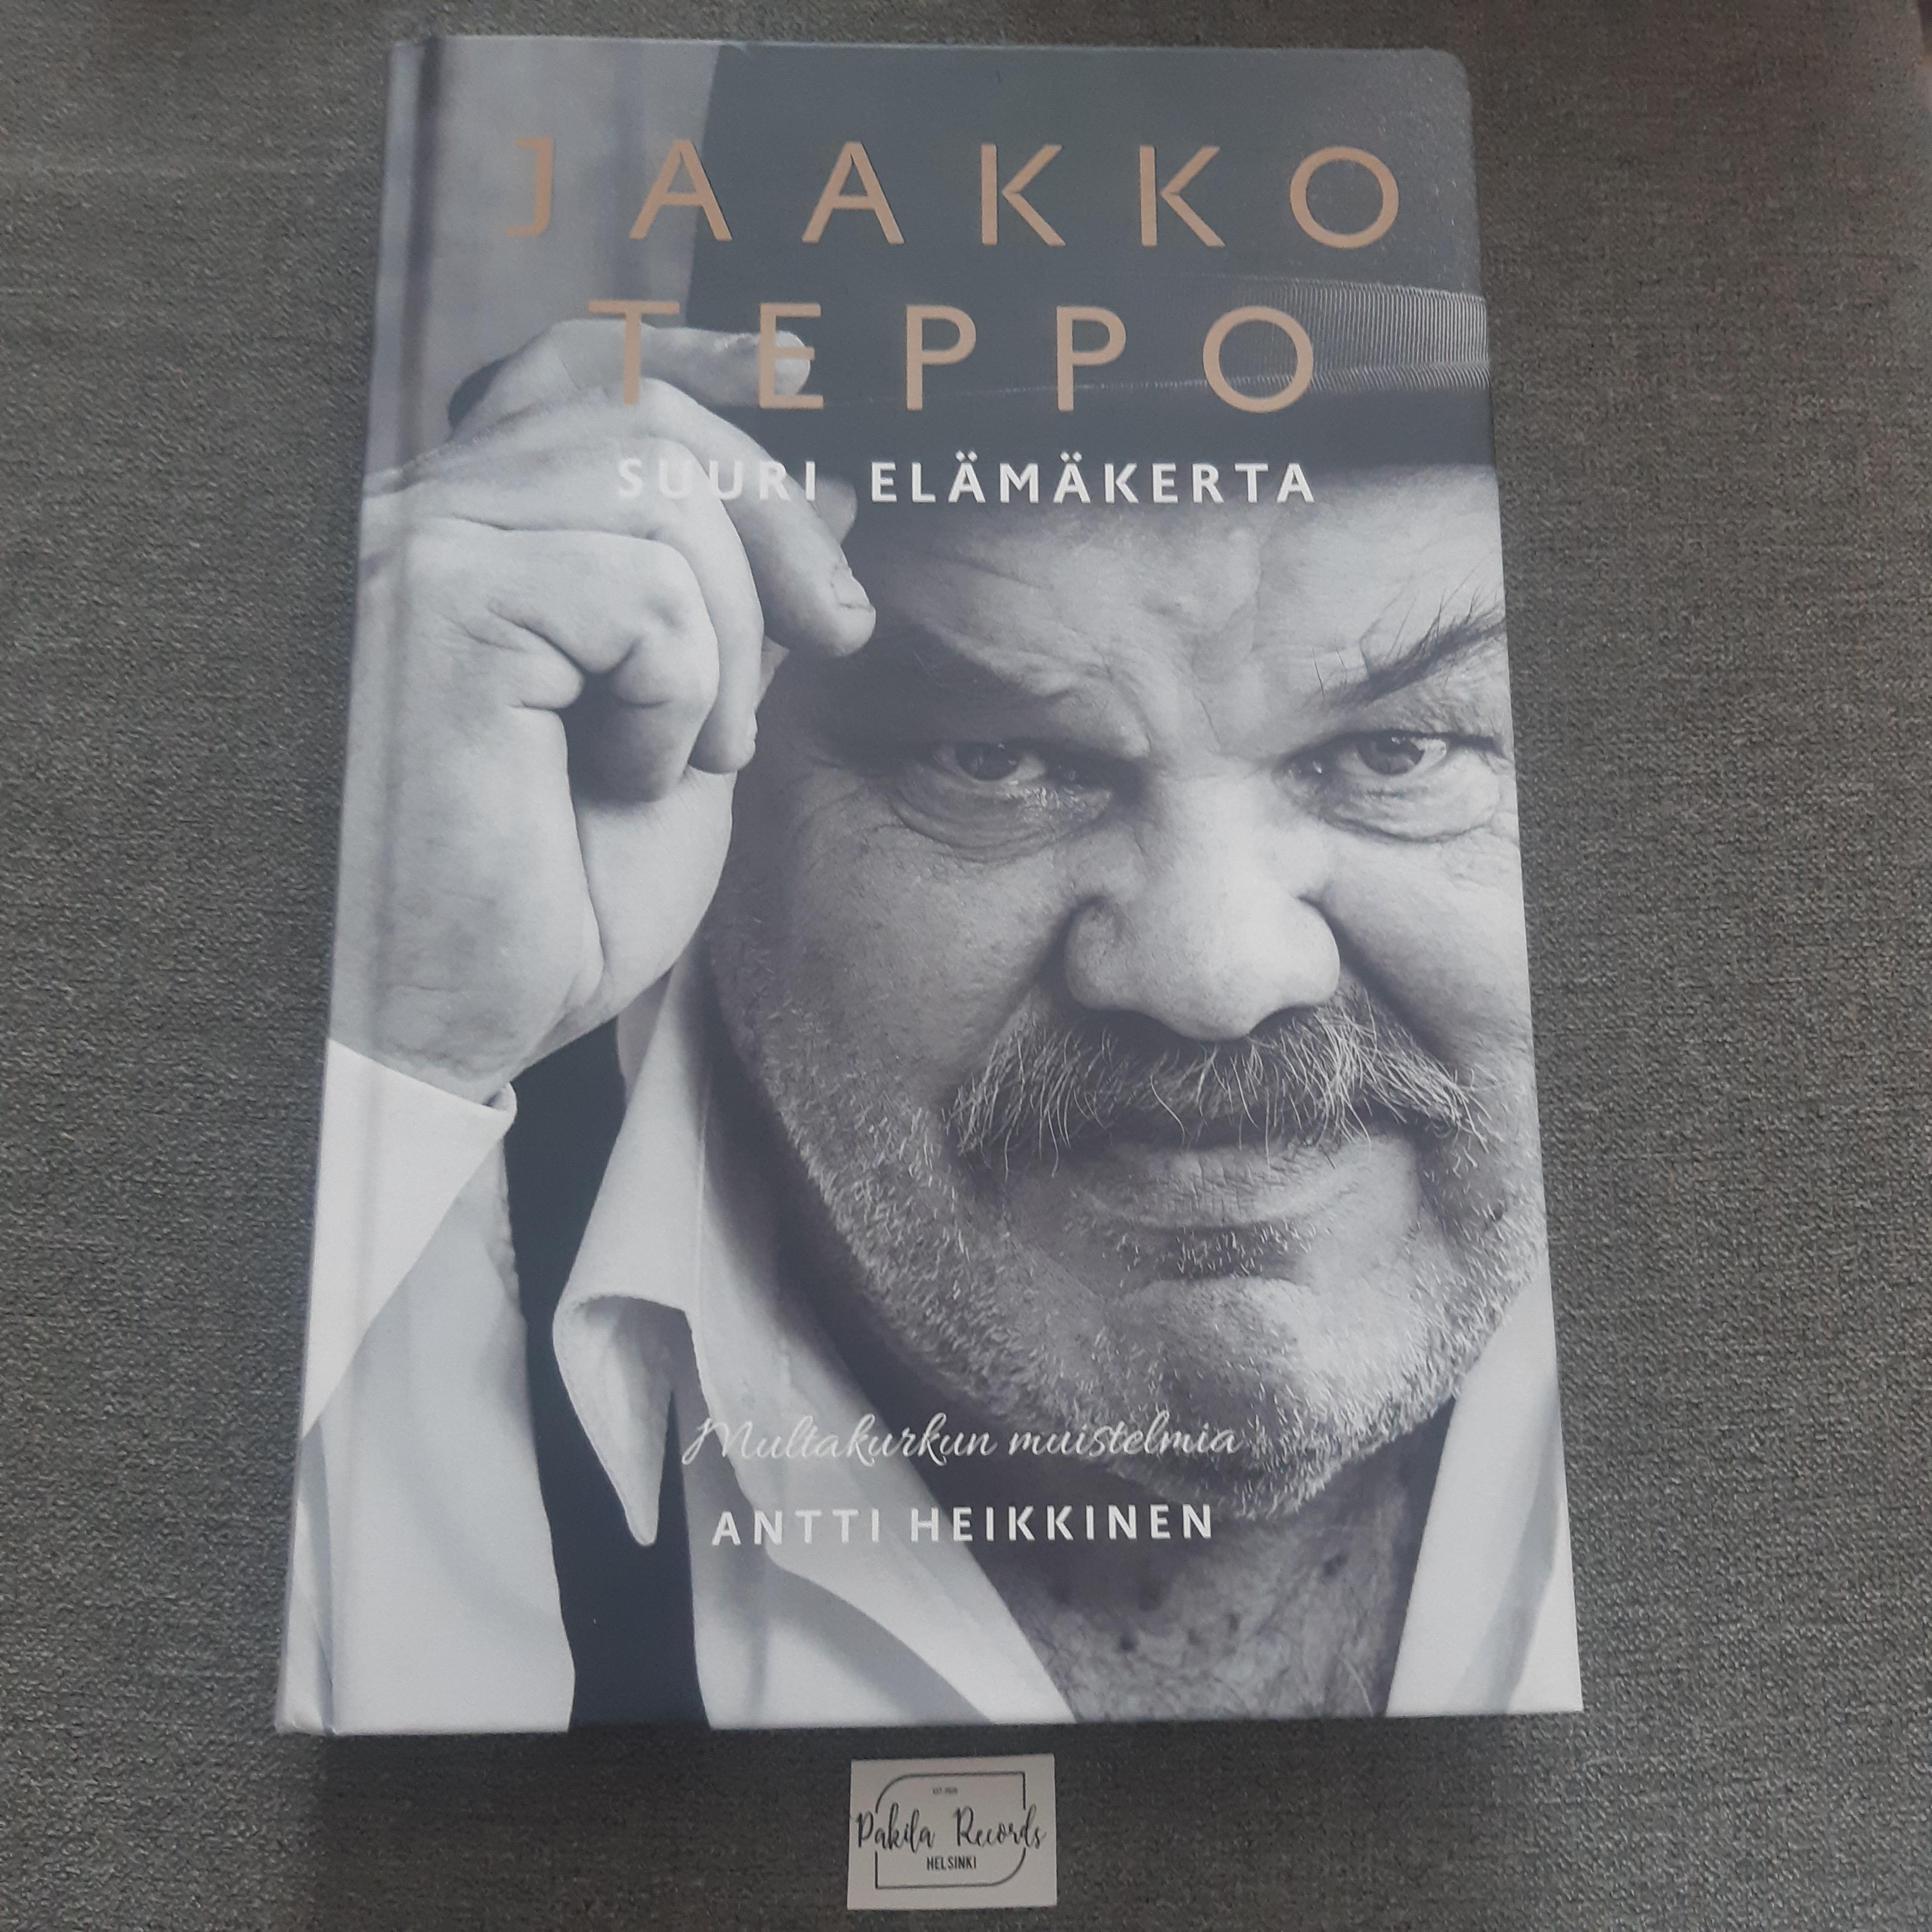 Jaakko Teppo, Suuri elämäkerta - Antti Heikkinen - Kirja (käytetty)